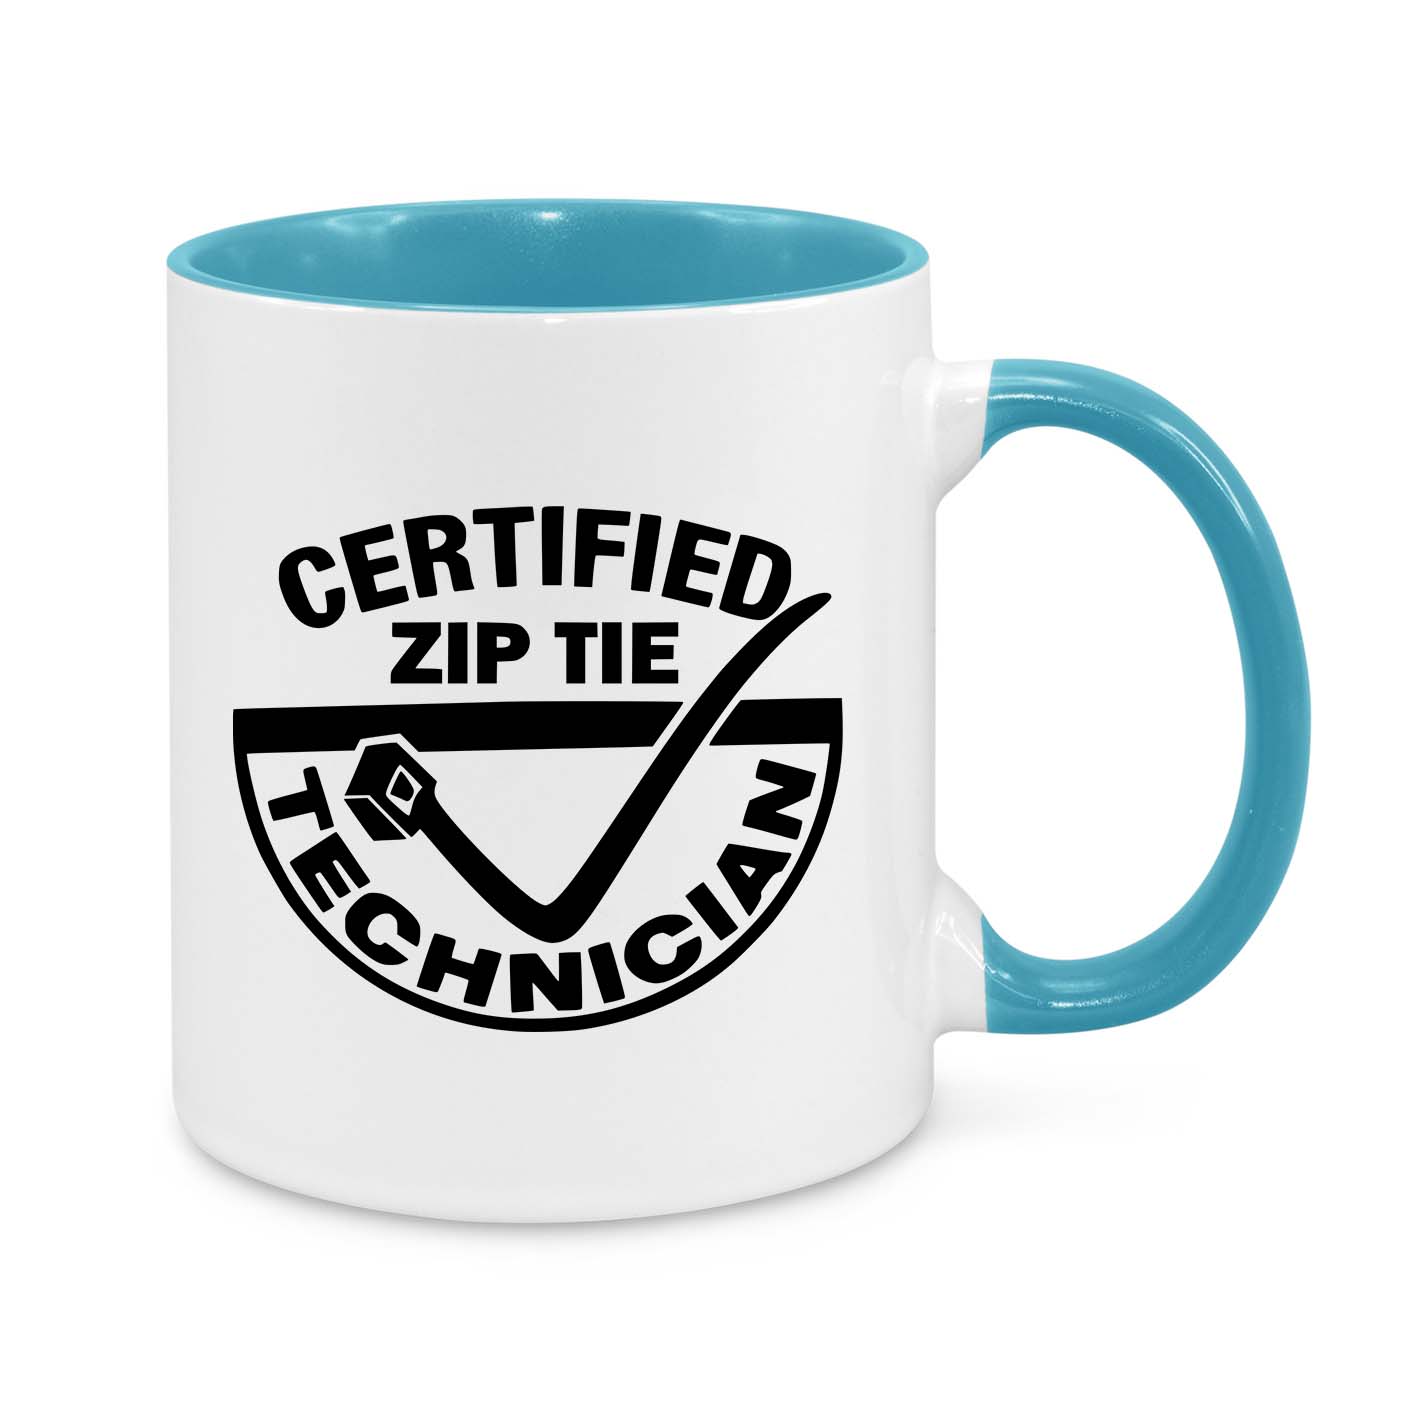 Certified Zip Tie Technician Novelty Mug